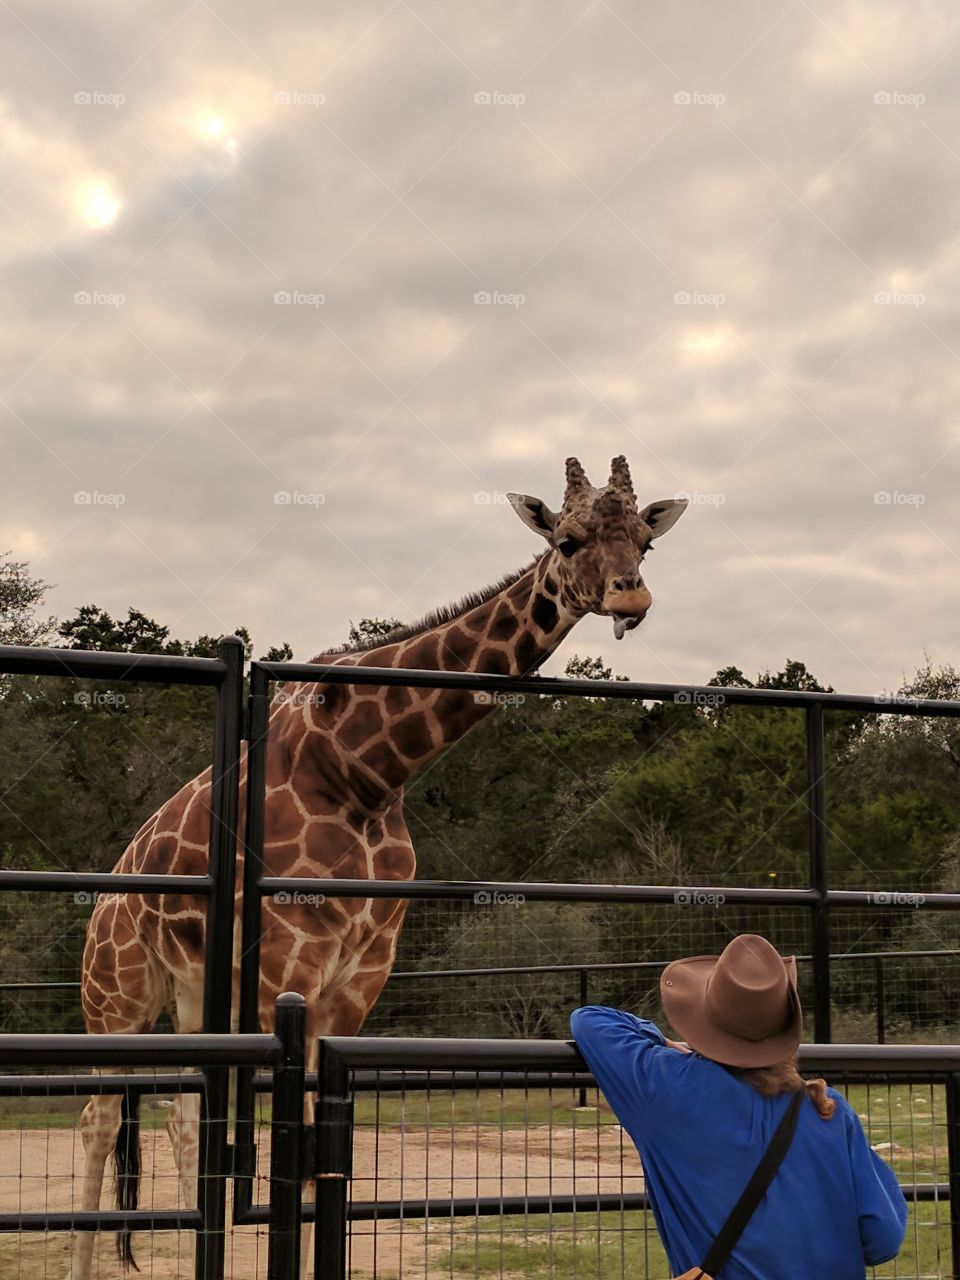 Giraffe whisperer